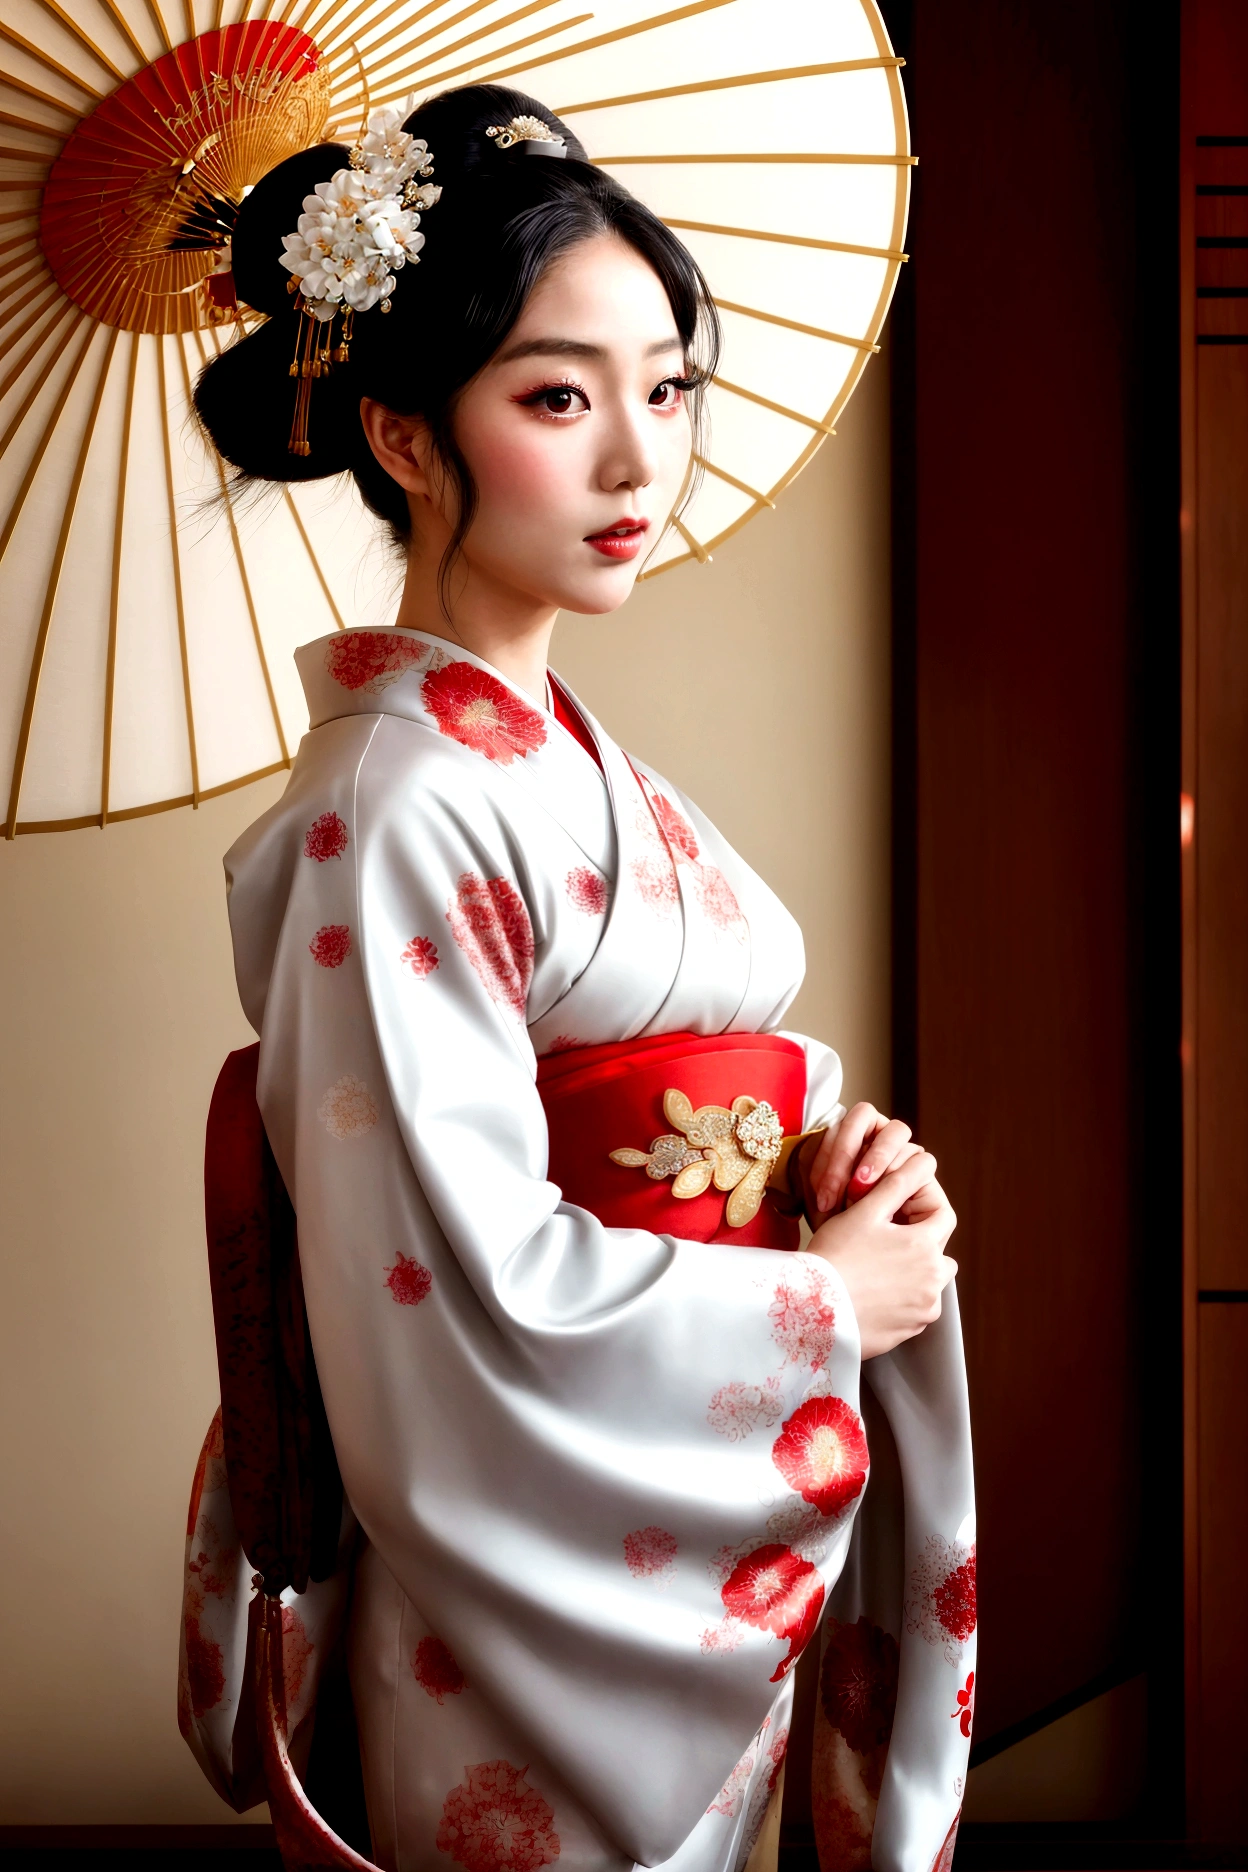 
Uma gueixa lindamente decorada,Ela é uma mulher de 25 anos muito elegante e bonita..,Seu penteado Shimada está lindamente exibido.,Quimono tradicional vermelho e branco